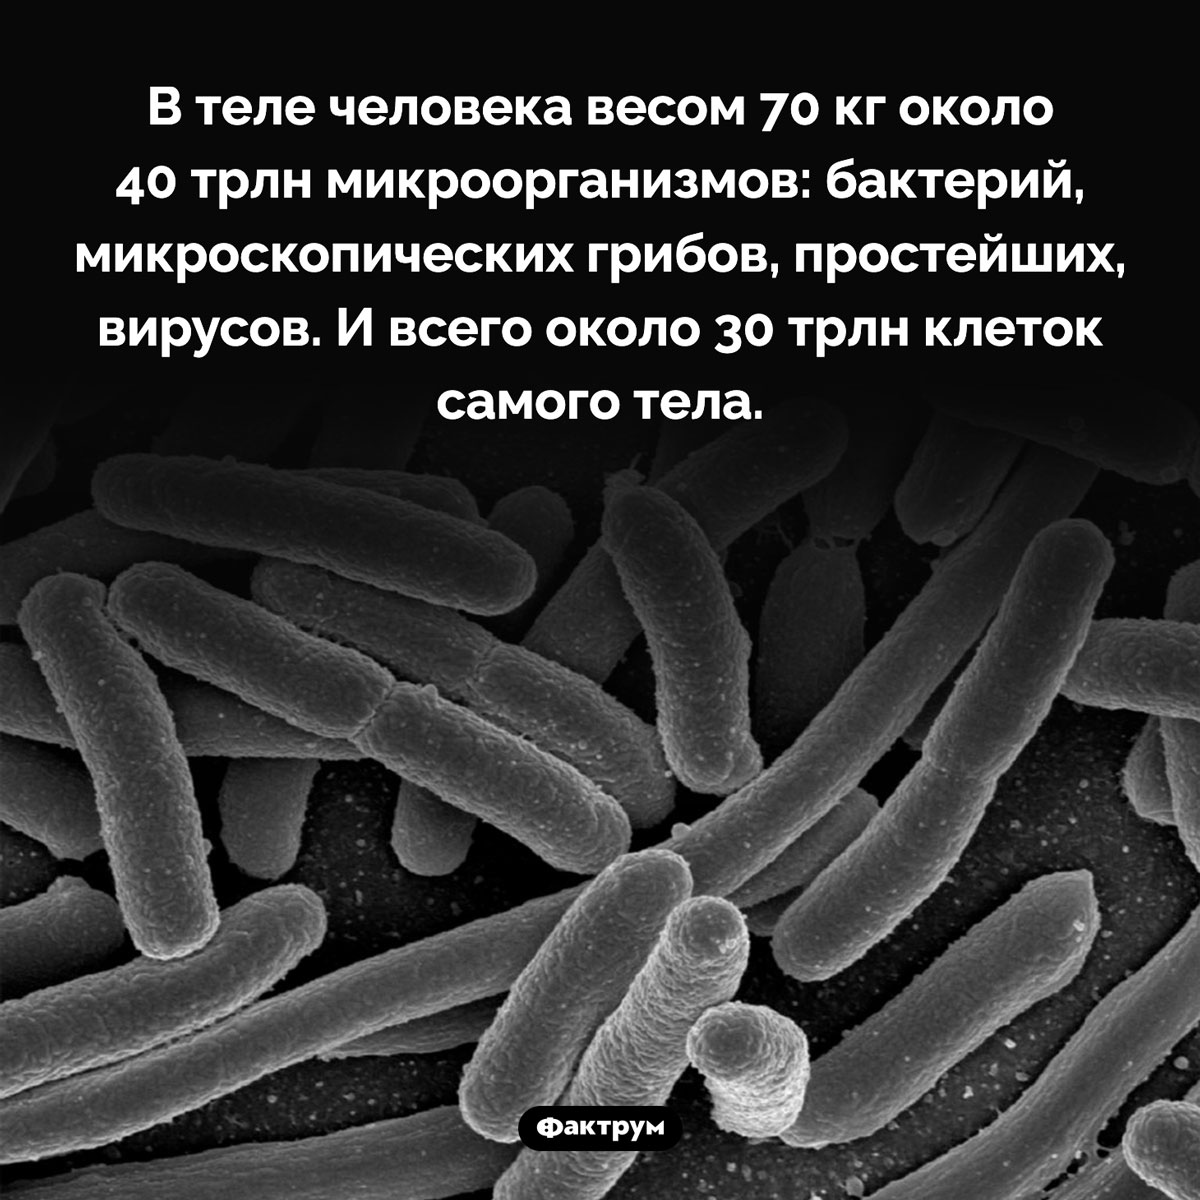 Микрофлора человека. В теле человека весом 70 кг около 40 трлн микроорганизмов: бактерий, микроскопических грибов, простейших, вирусов. И всего около 30 трлн клеток самого тела.